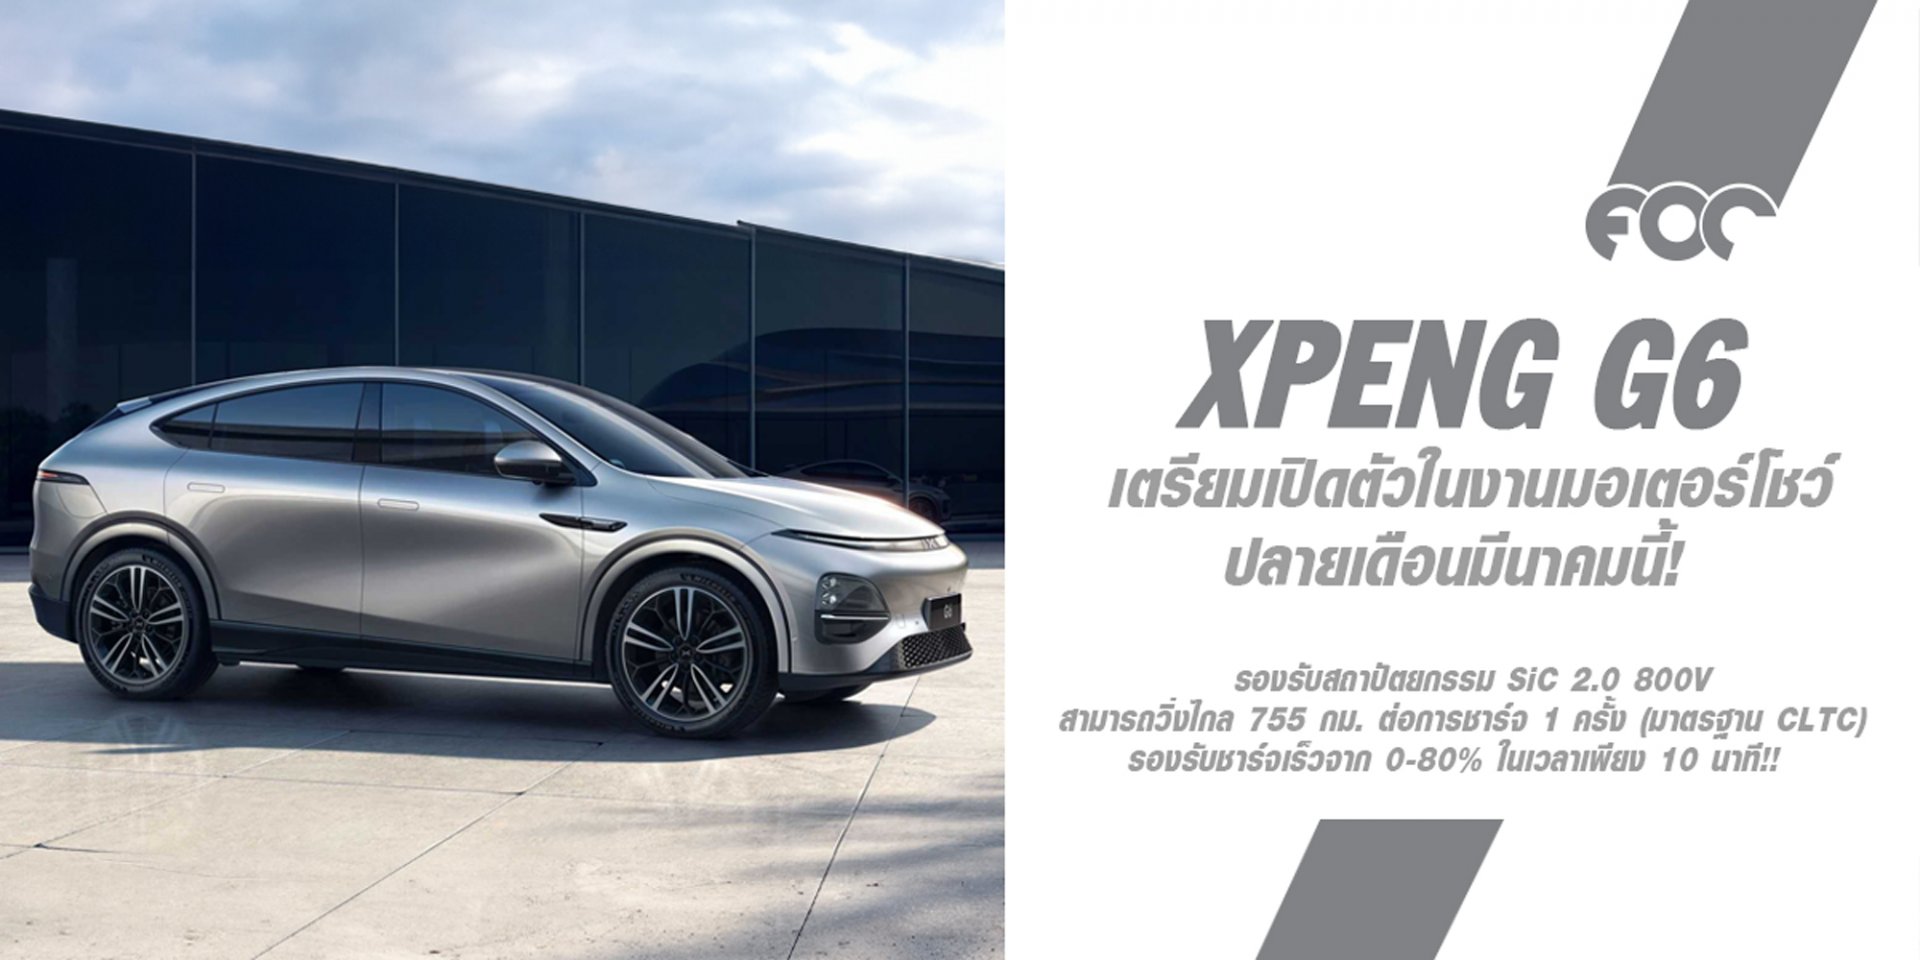 XPENG G6 รถคันแรกของแบรนด์ “เอ็กซ์เผิง” เตรียมเปิดตัวในงานมอเตอร์โชว์ปลายเดือนมีนาคมนี้! คาดราคา 1.5 ล้าน! ทำตลาดโดย MGC-ASIA ได้สิทธิ์นำเข้าทำตลาดในไทย